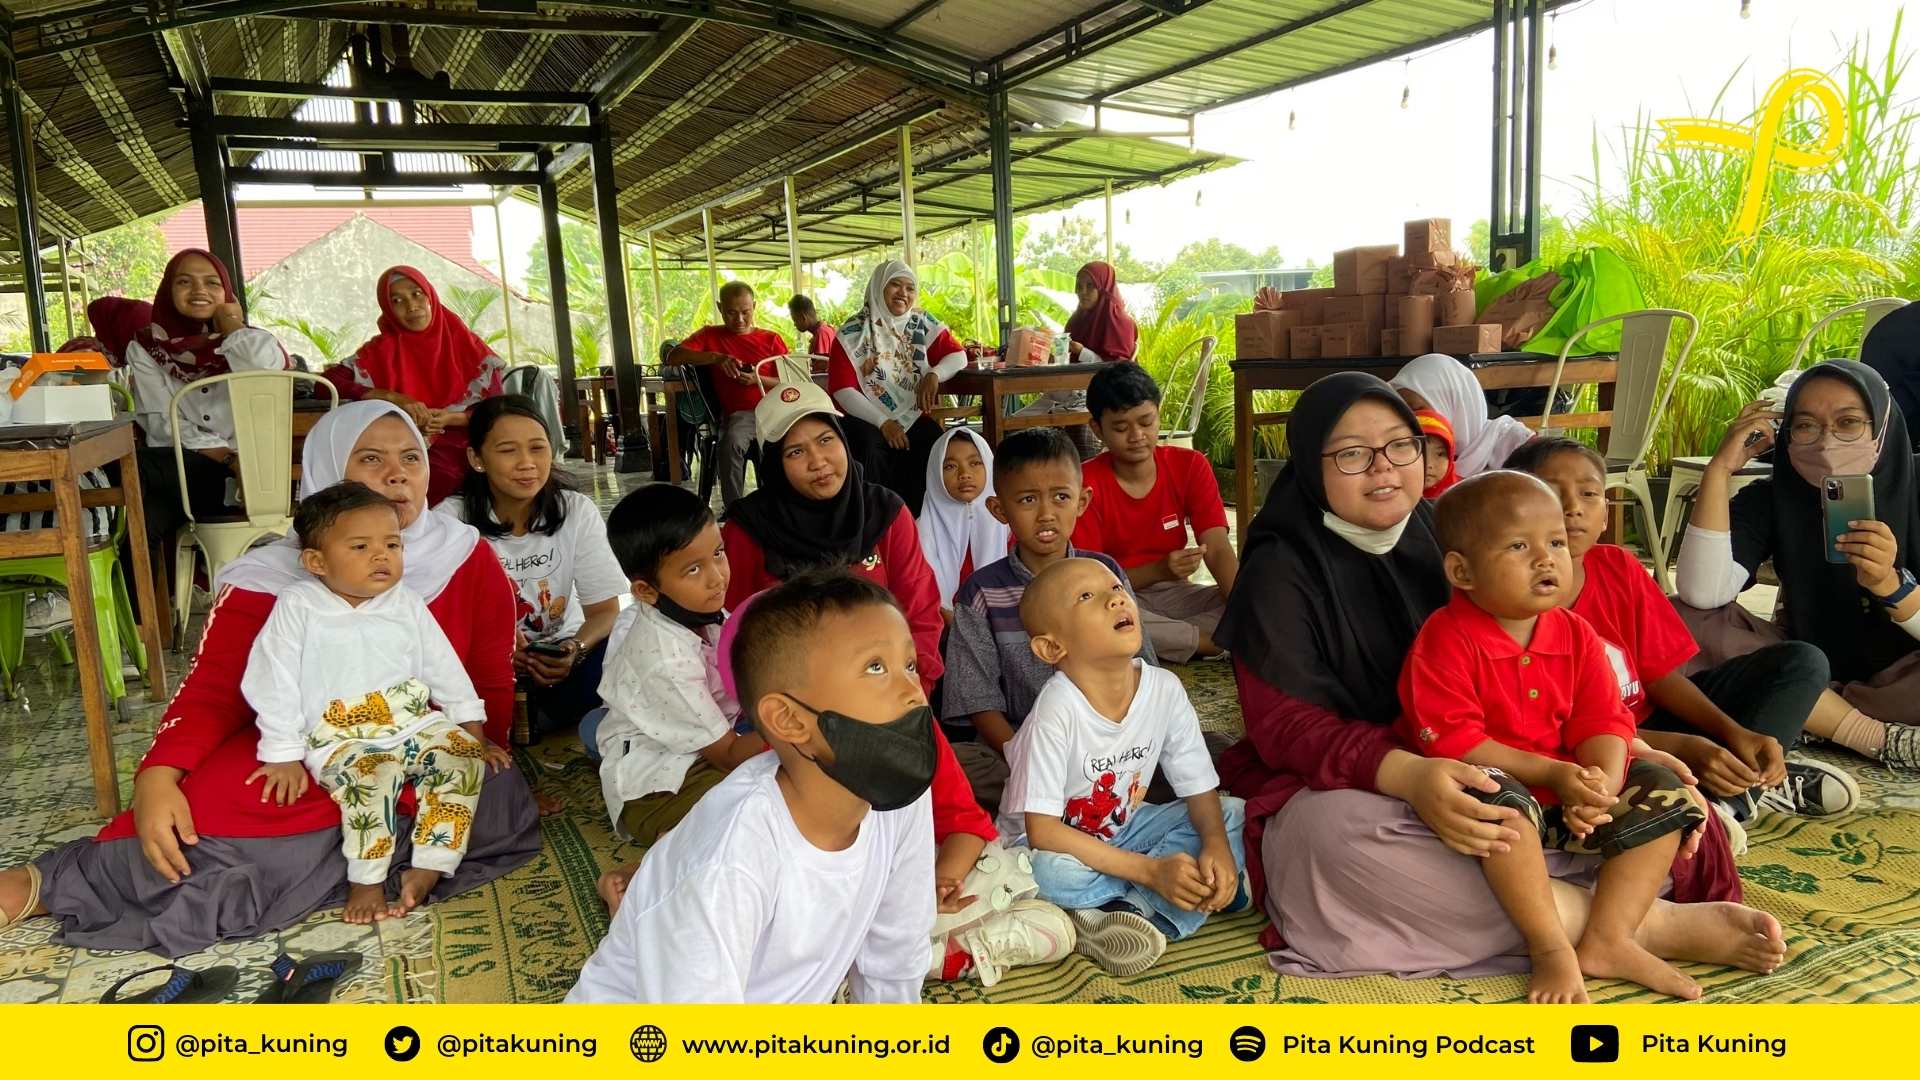 Peringatan Hari Kemerdekaan bersama Pita Kuning Yogyakarta (2)